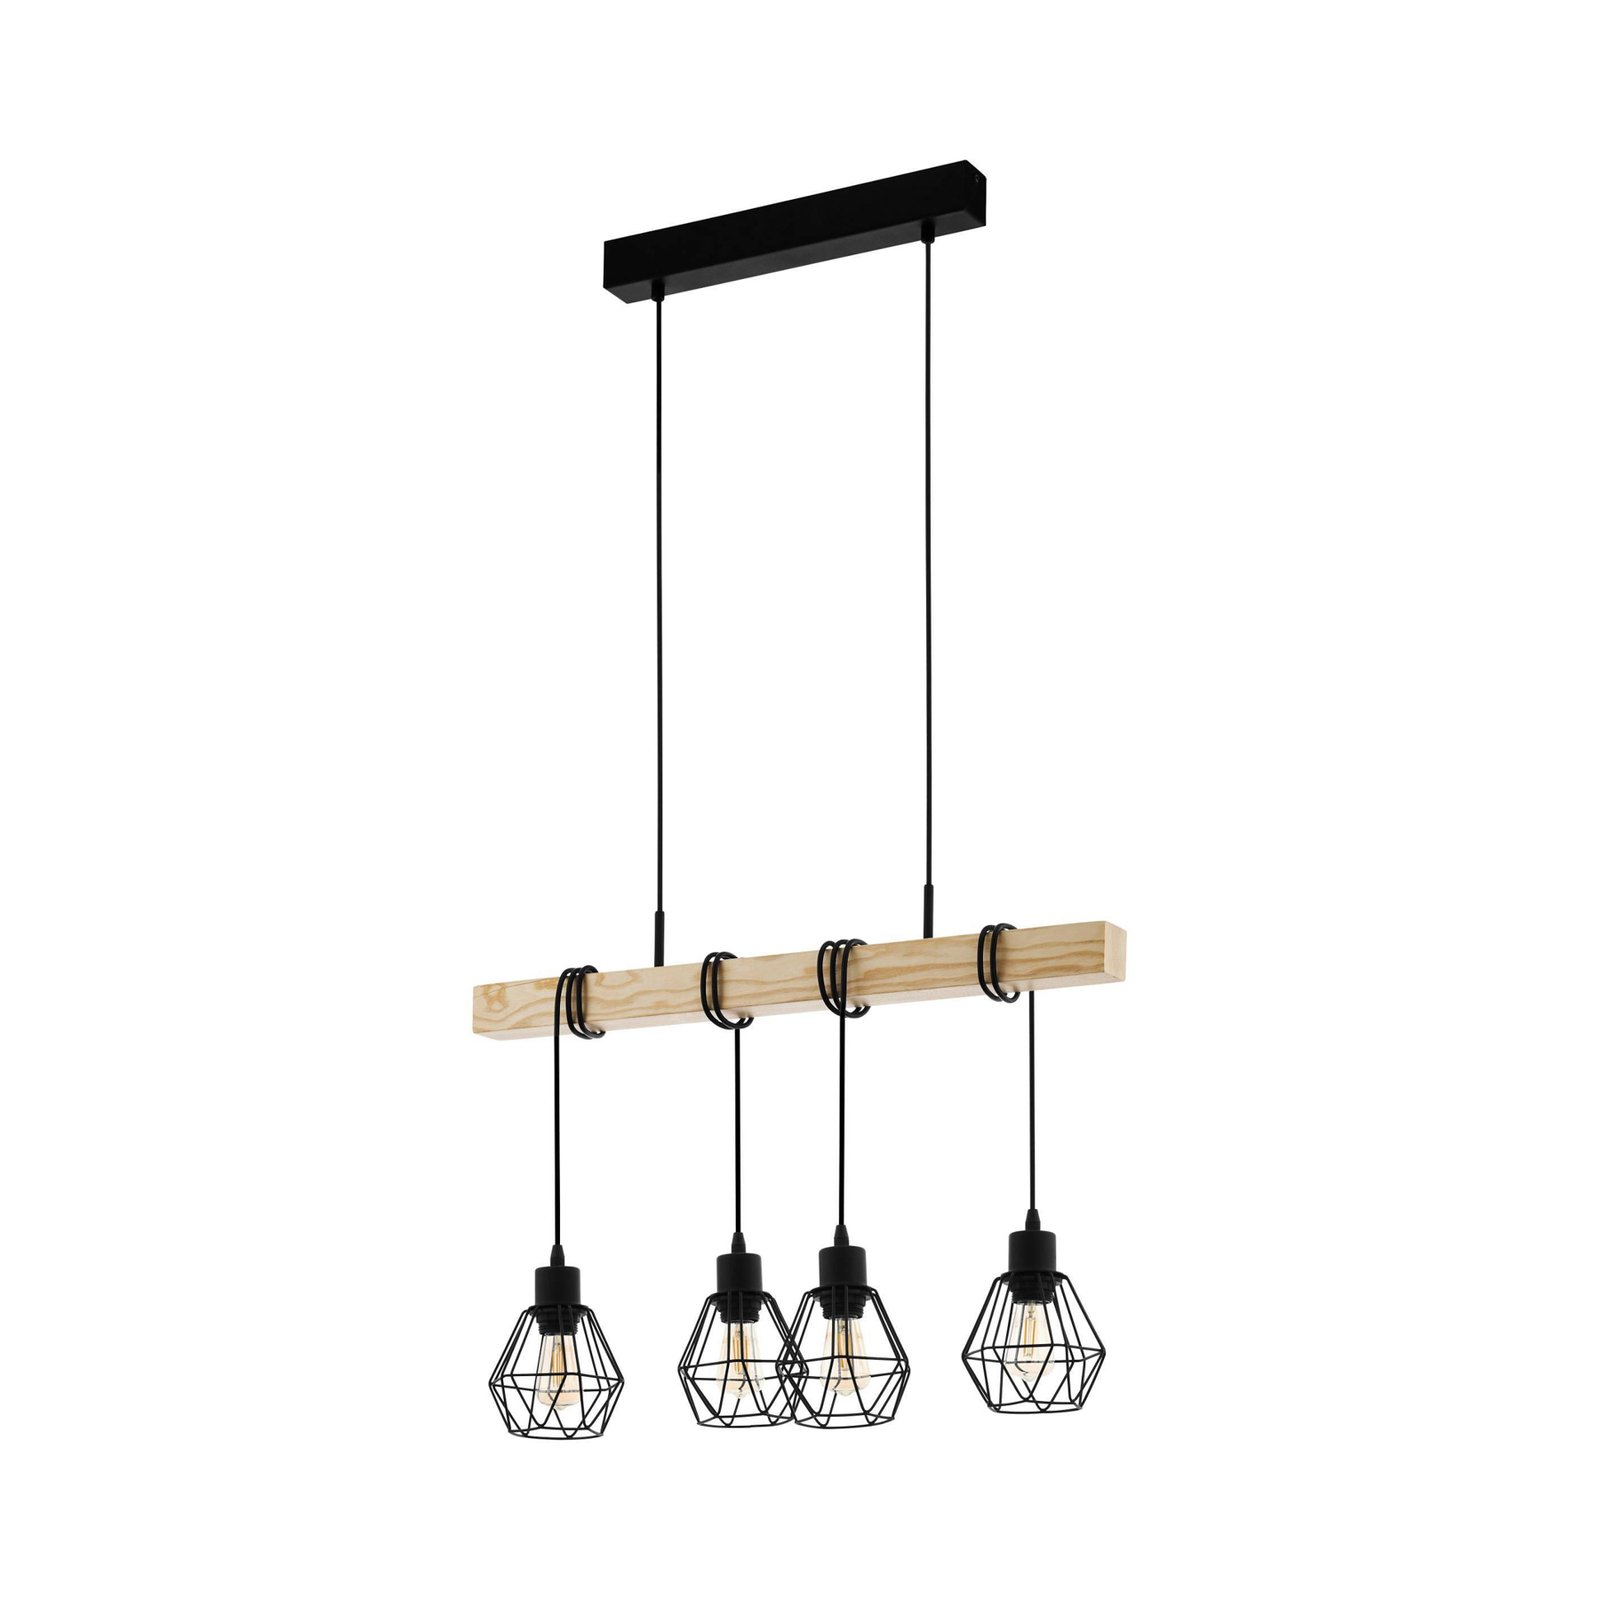 Townshend hanglamp, lengte 70 cm, zwart/eiken, 4-lamps.